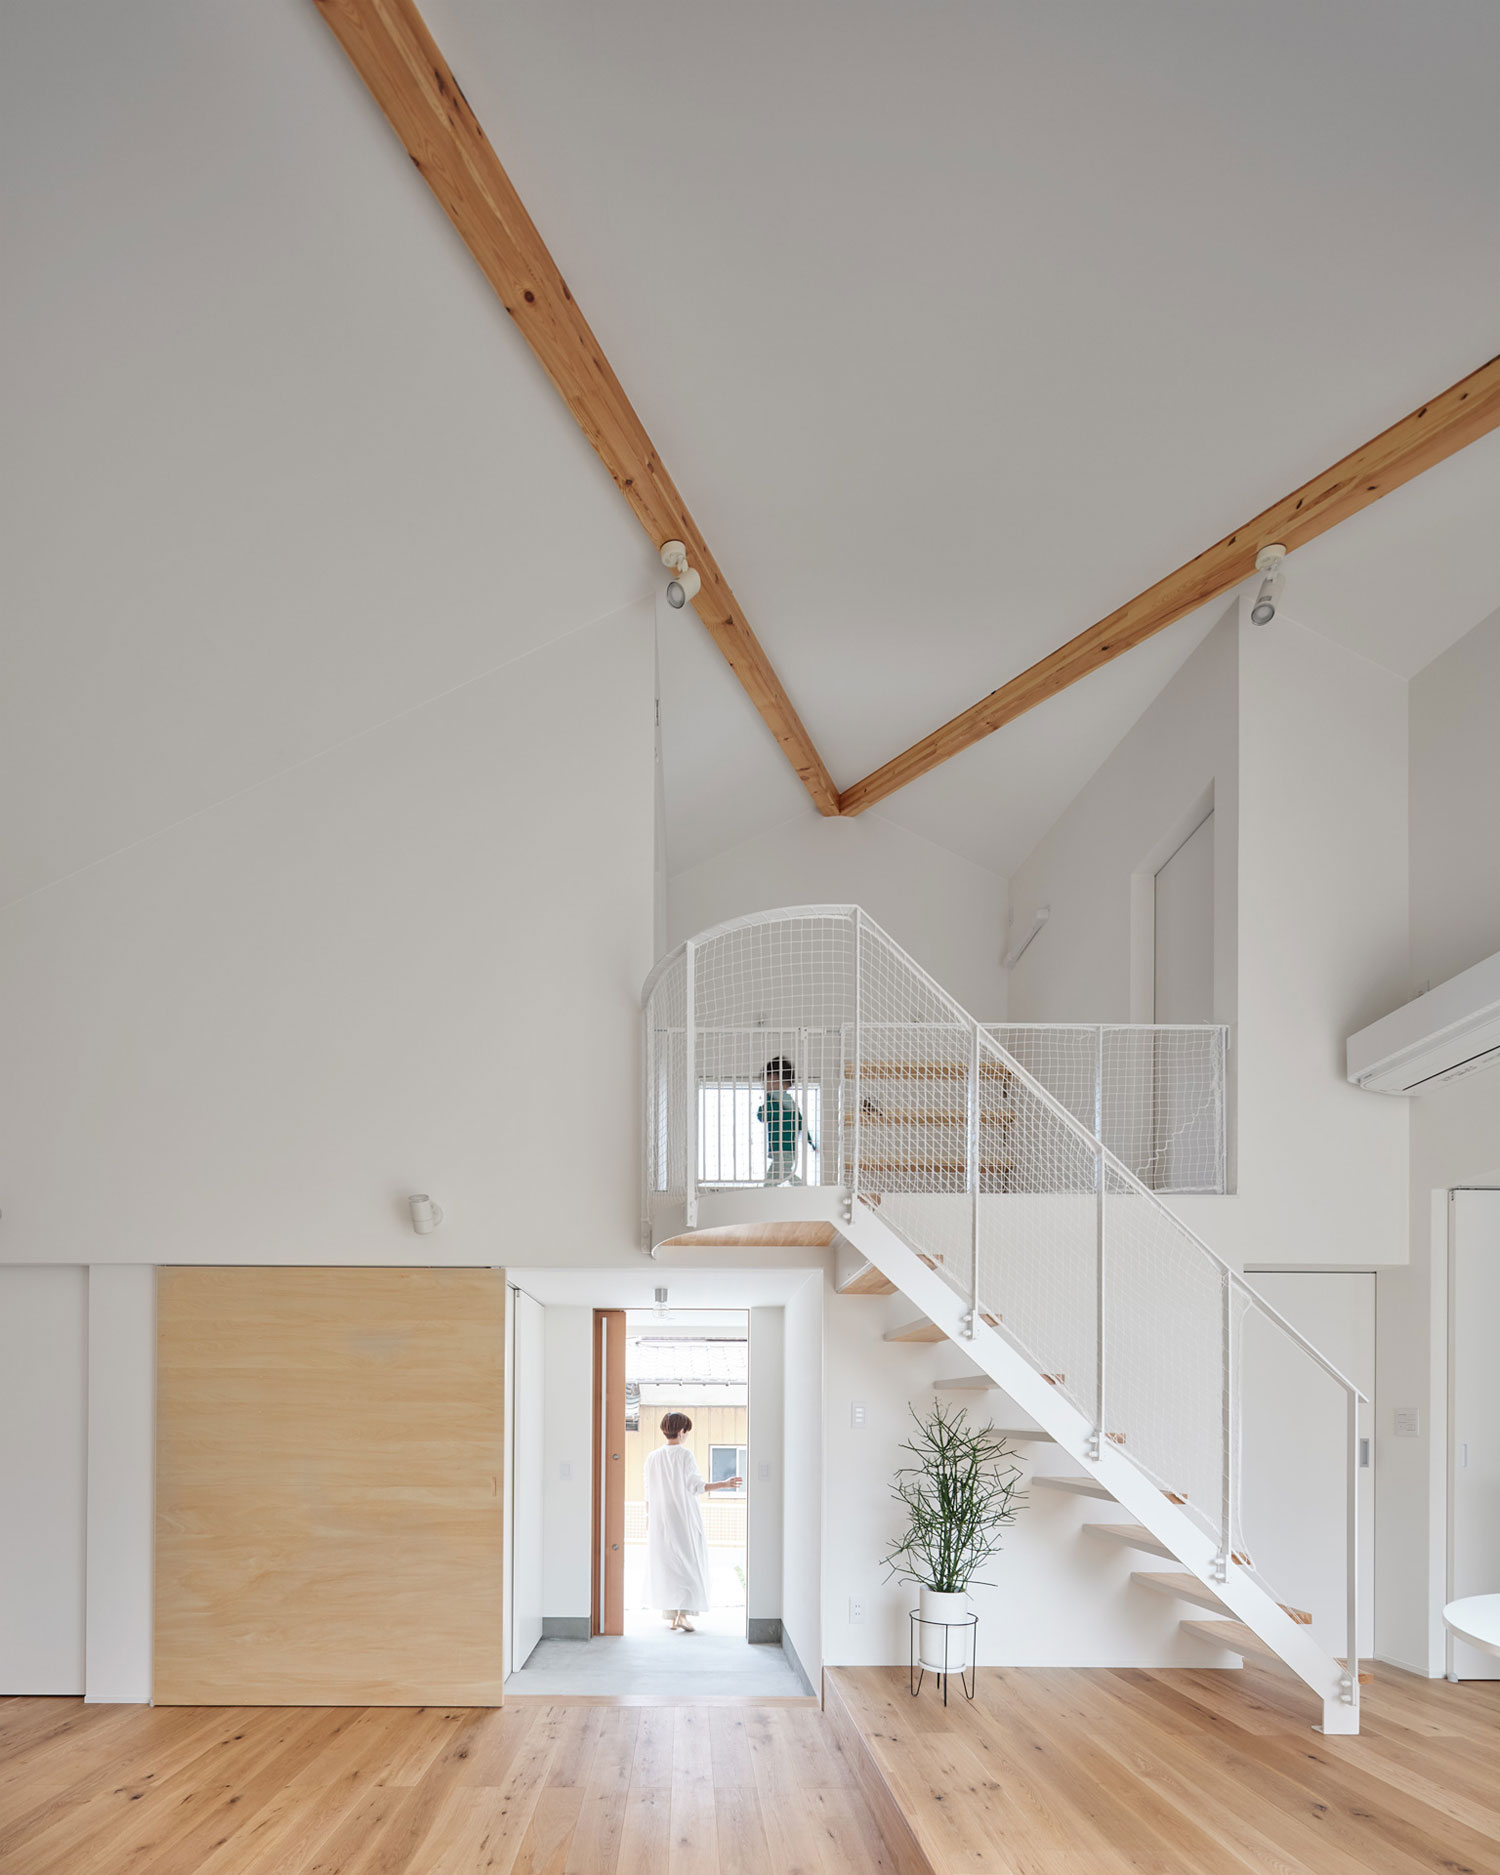 白を基調とした空間にリビングイン階段がある様子・フリーダムアーキテクツの事例